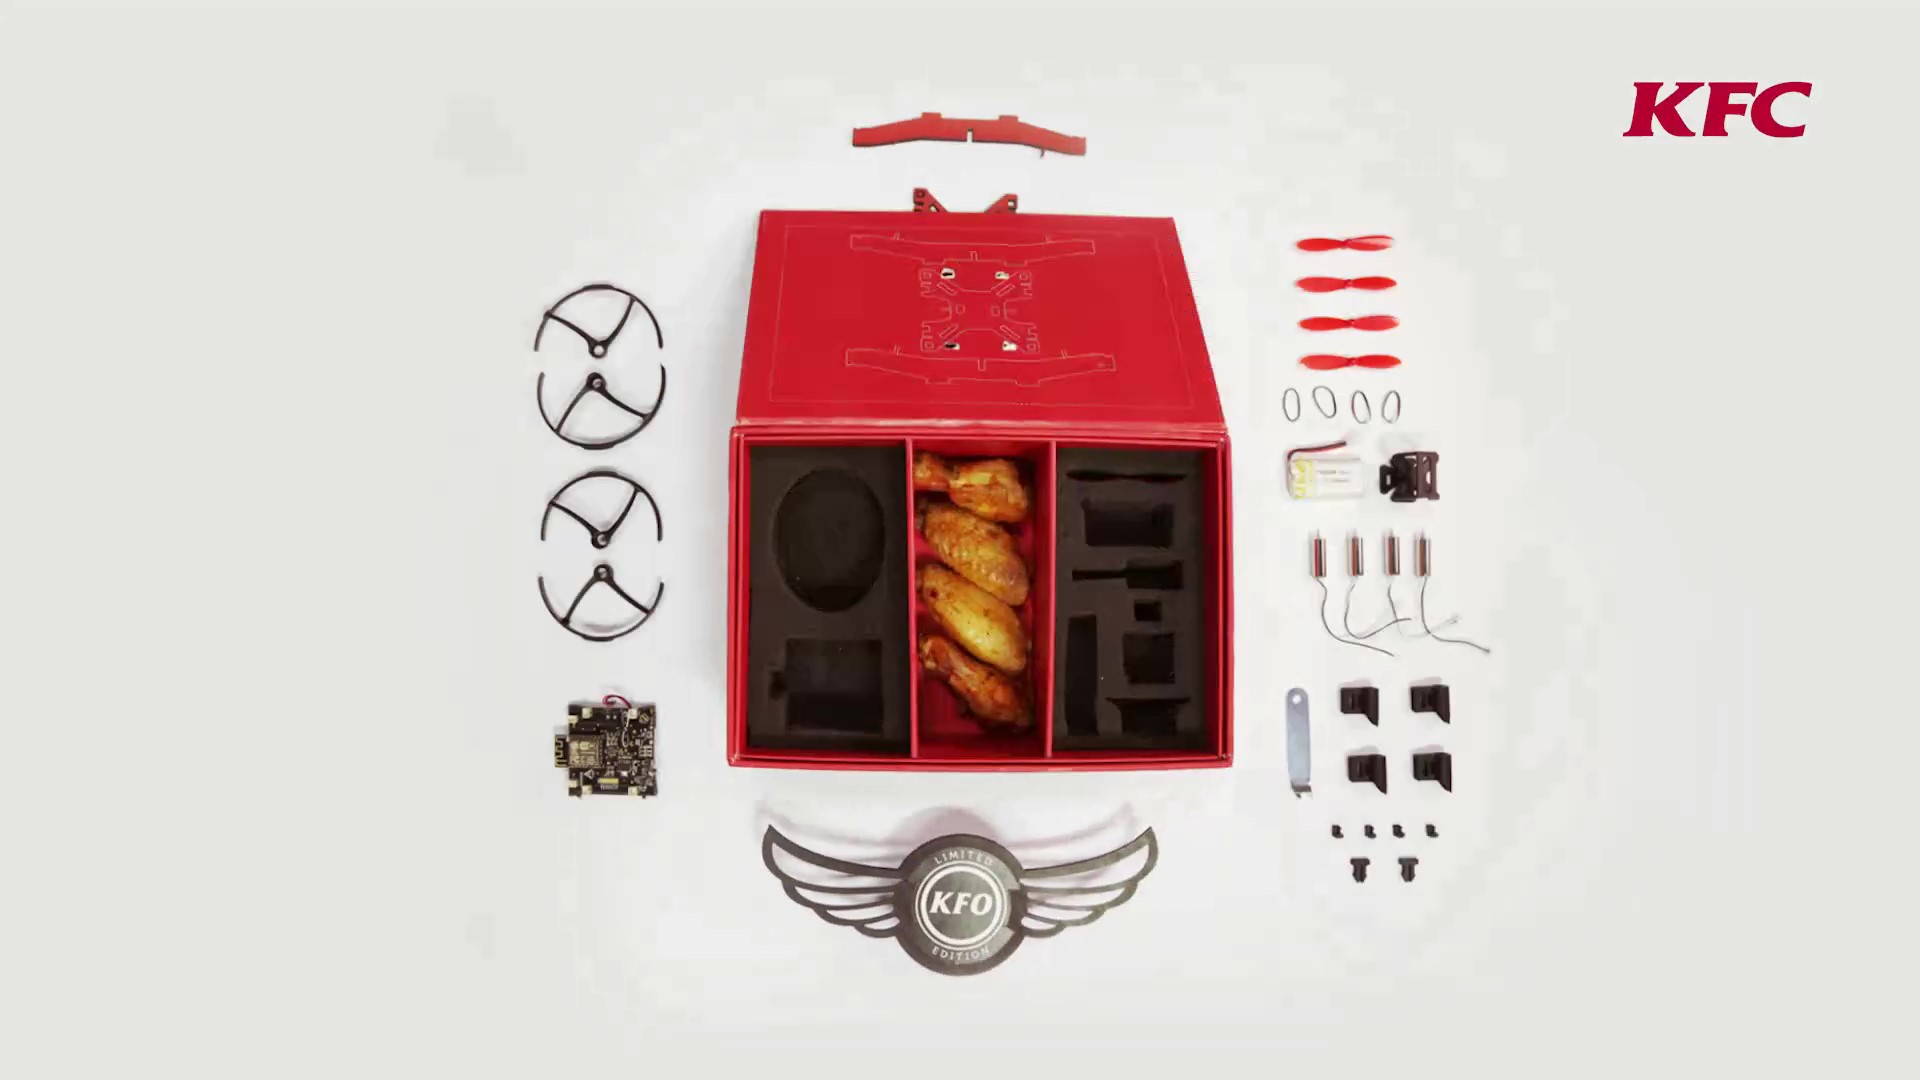 肯德基简直是快餐界的“戏精”，这一次要把鸡翅盒变成无人机